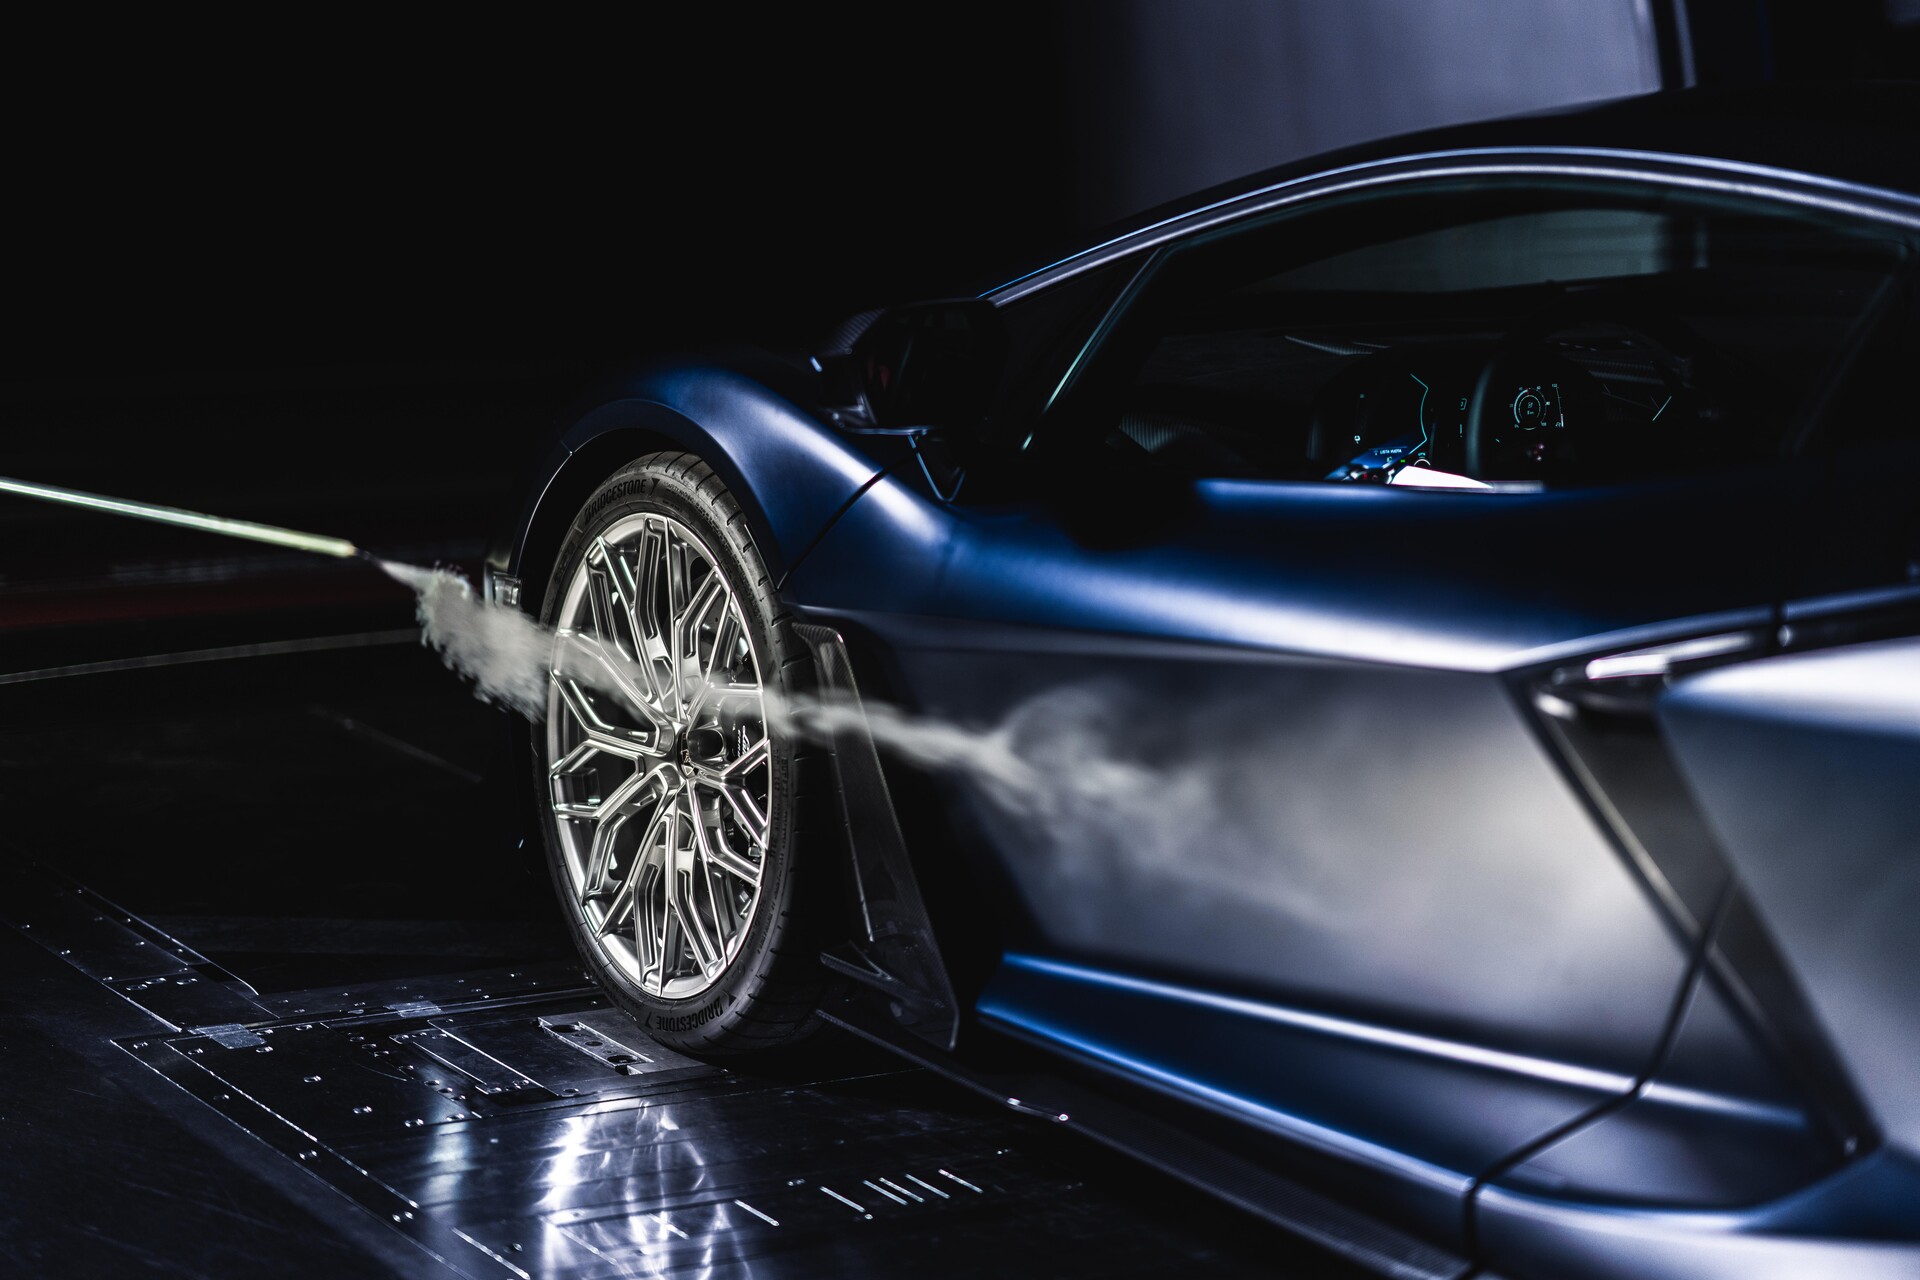 디자인과 공기역학: Automobili Lamborghini의 "Beyond design, mastering the air" 비디오